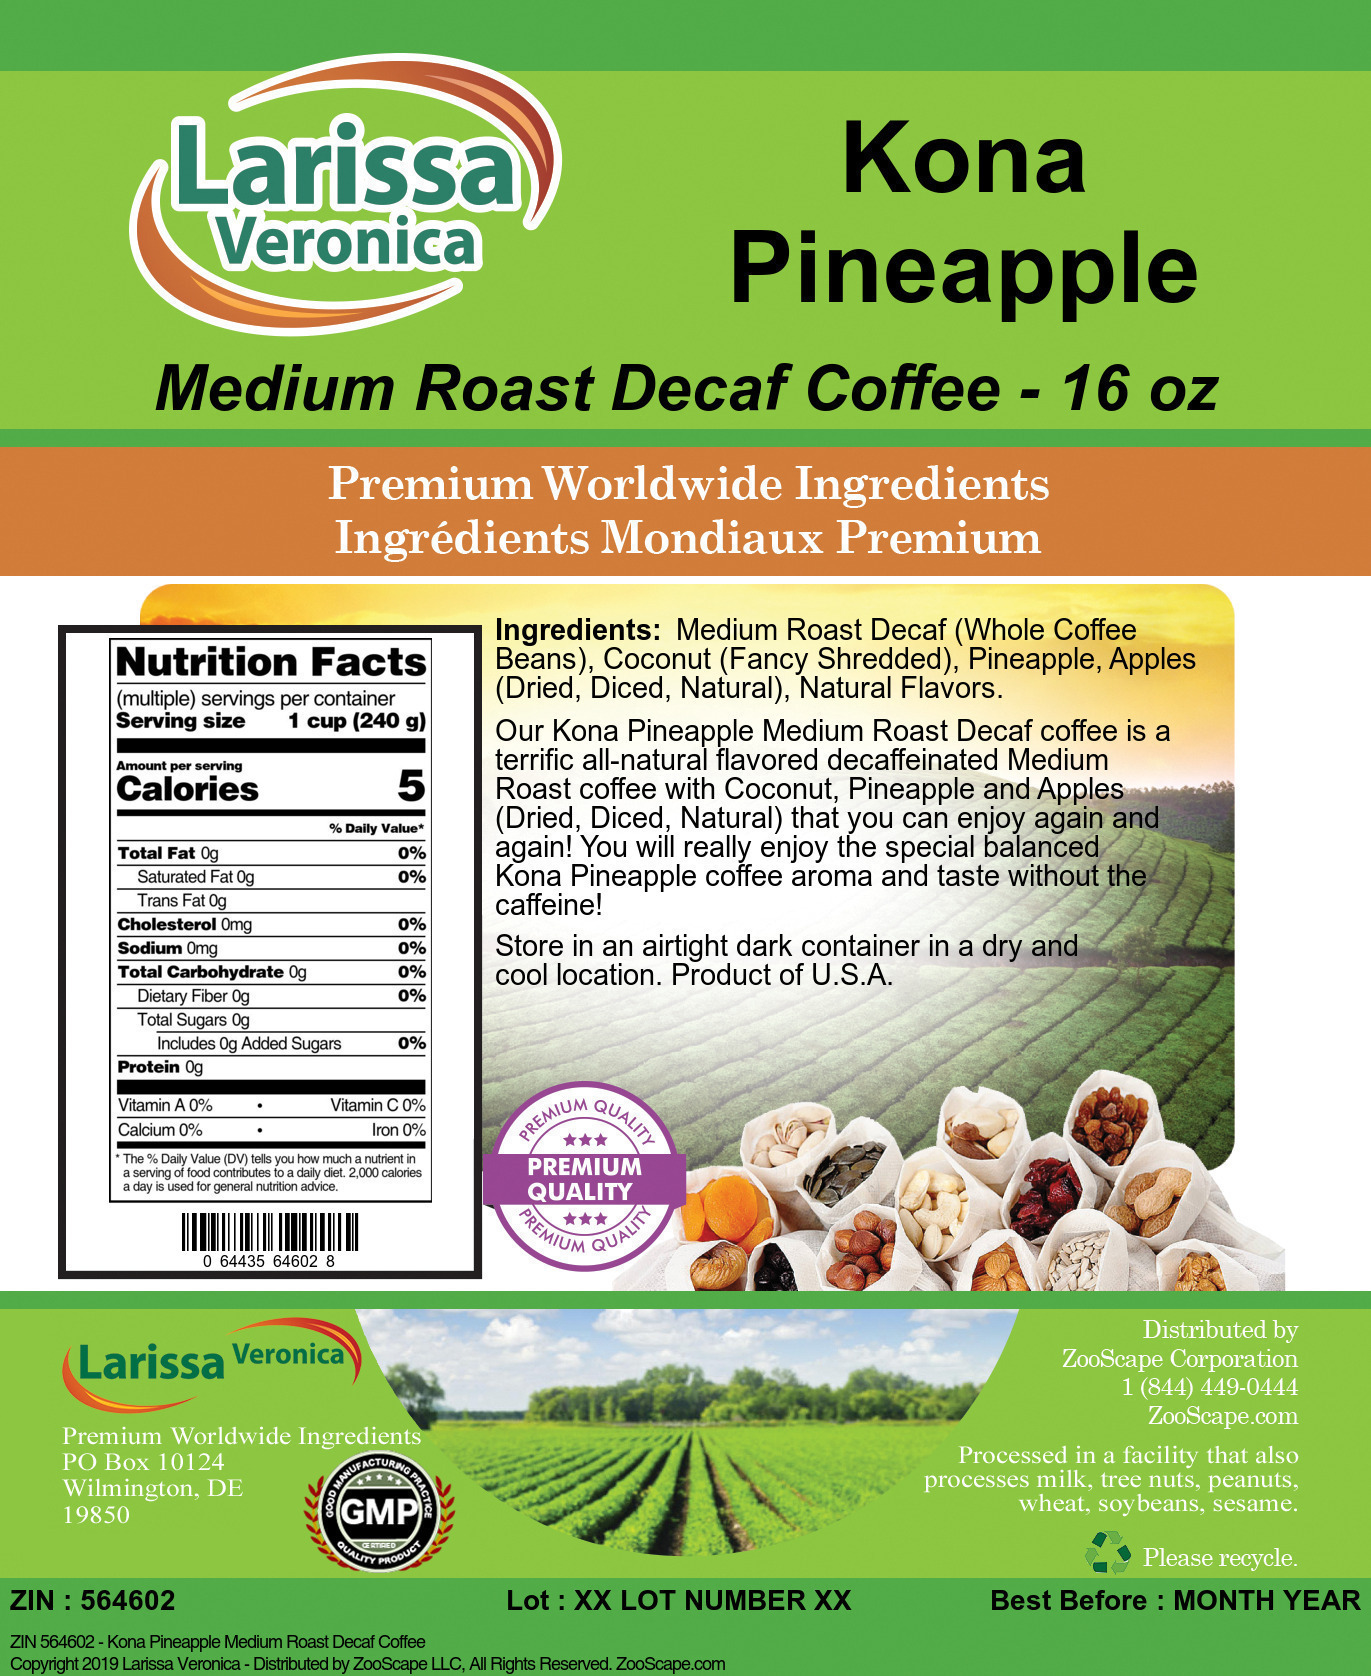 Kona Pineapple Medium Roast Decaf Coffee - Label